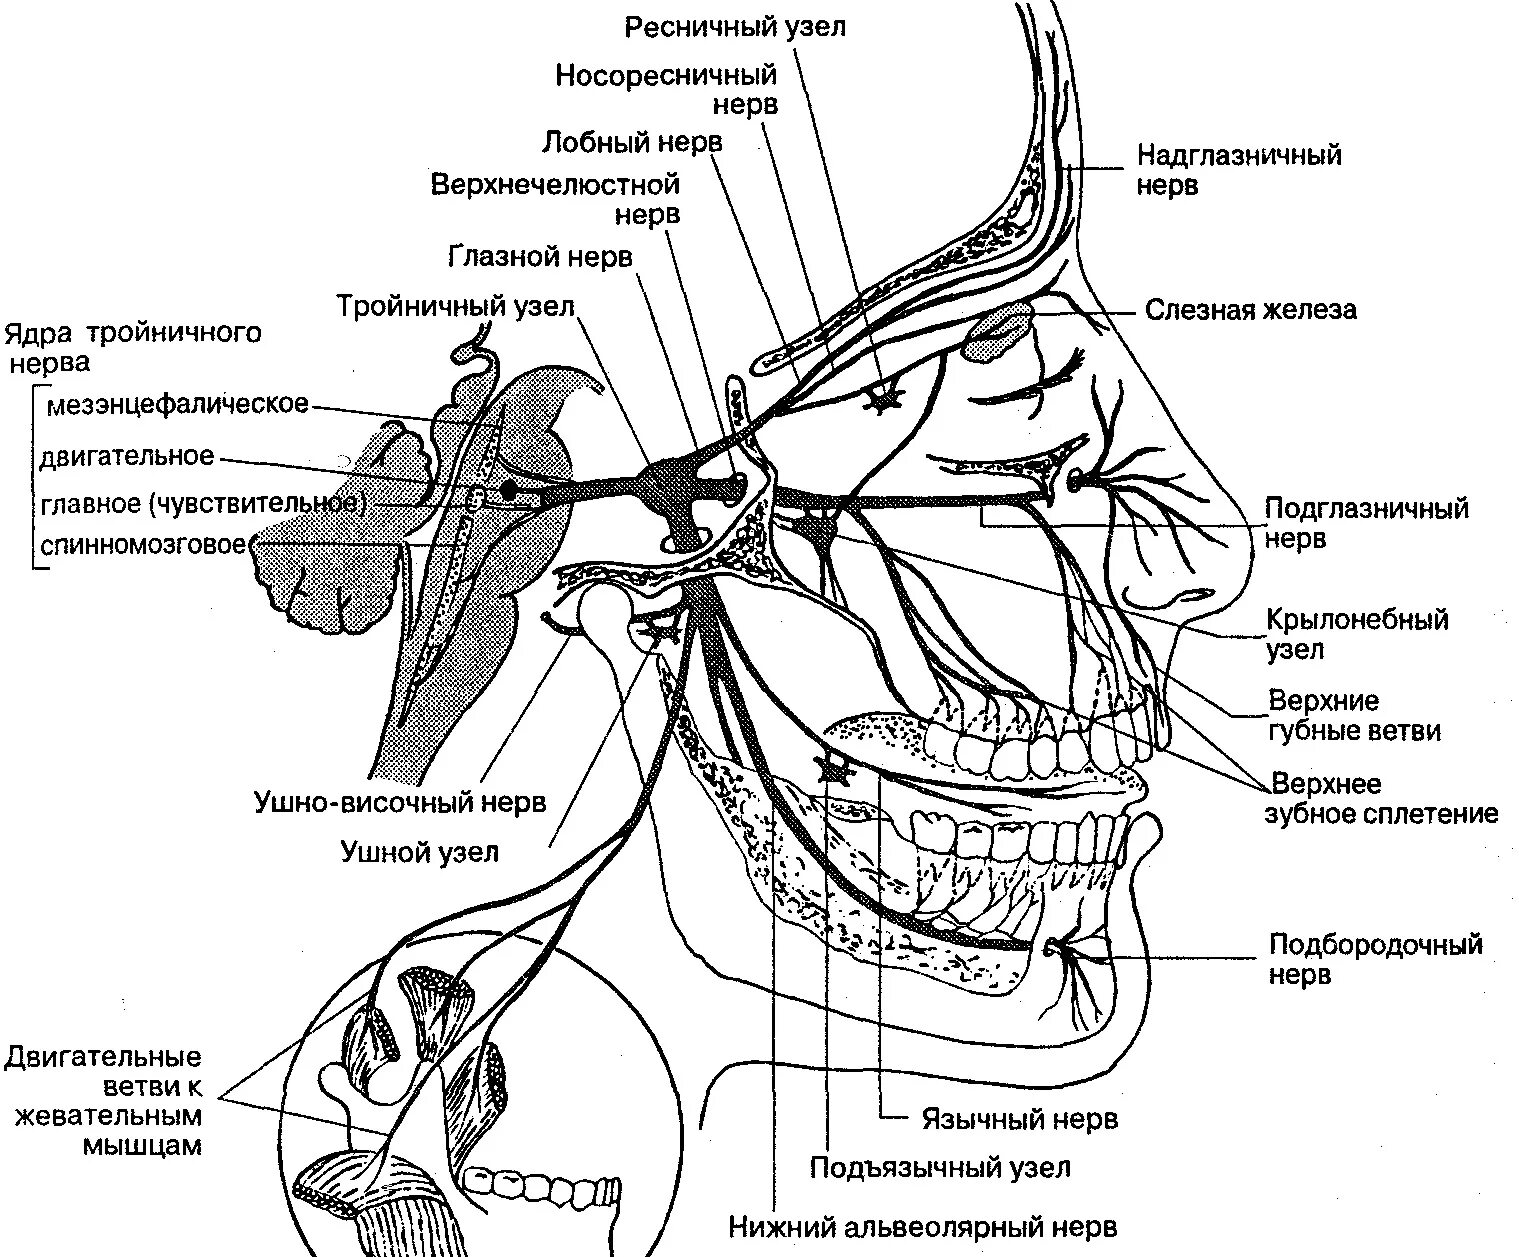 Ветви тройничного нерва анатомия. Схема проекции ветвей тройничного нерва. Иннервация тройничного нерва схема. Узлы тройничного нерва анатомия.